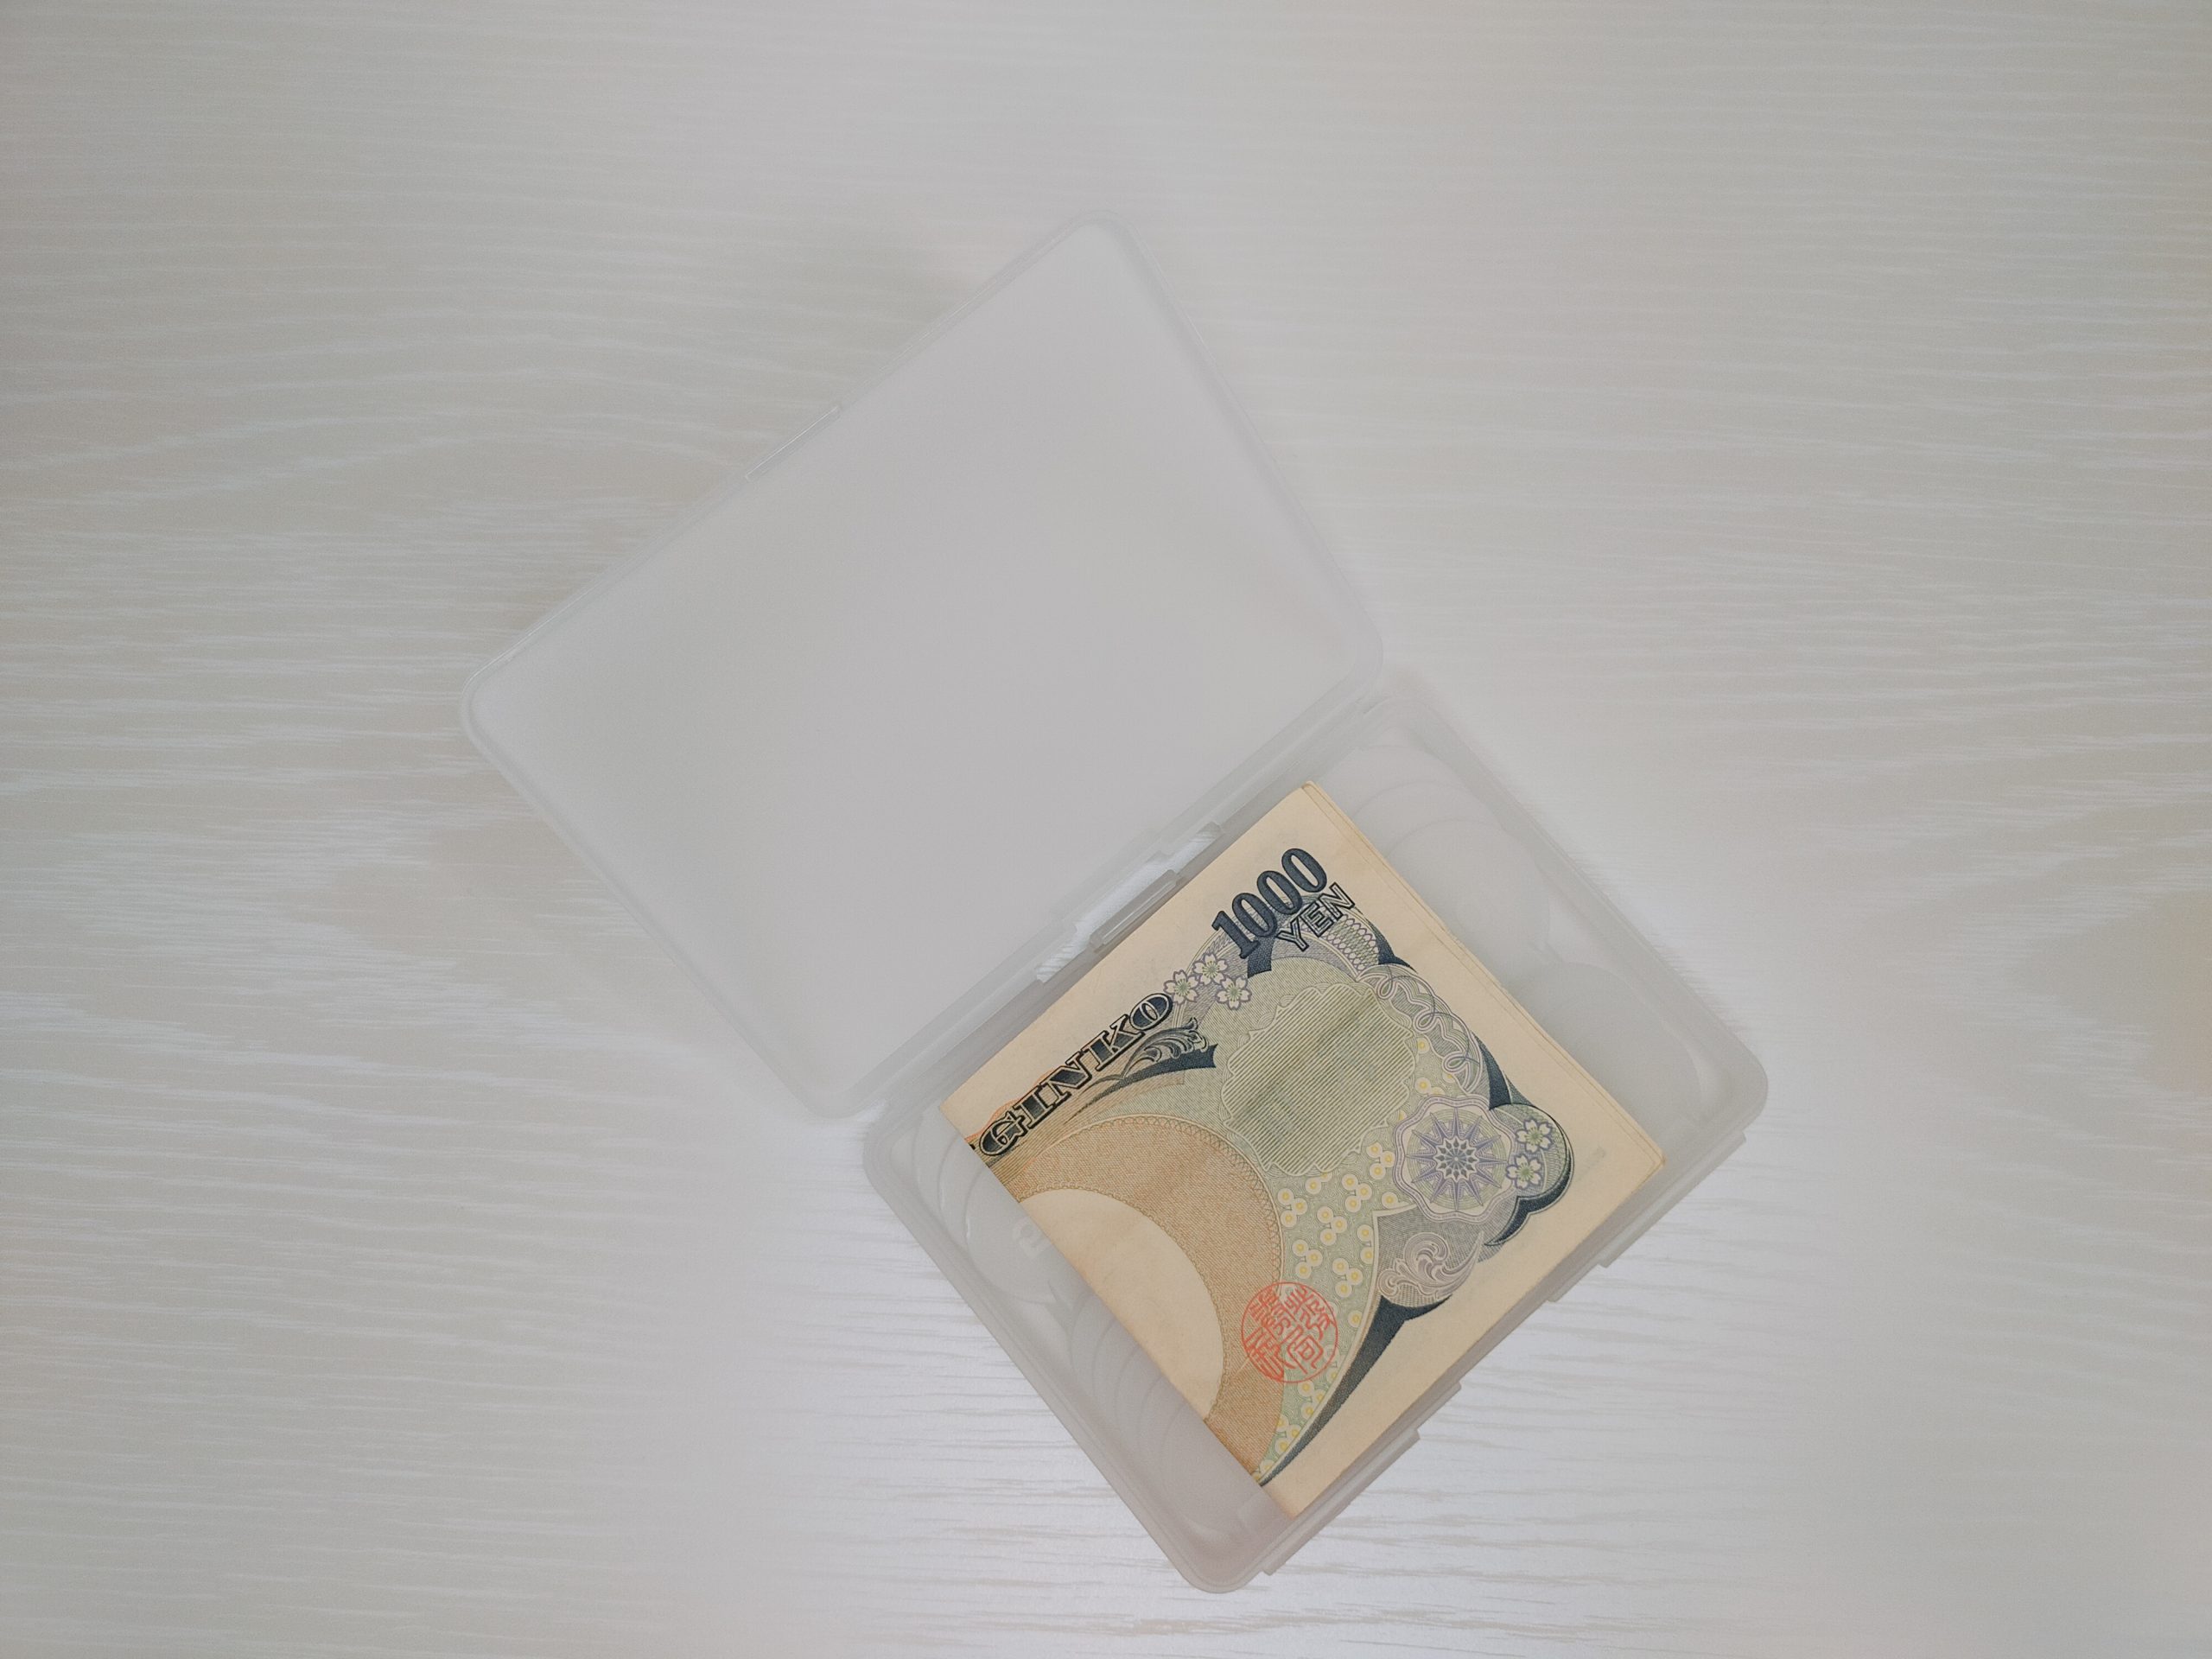 『スマートコインケース』に千円札を収納した様子